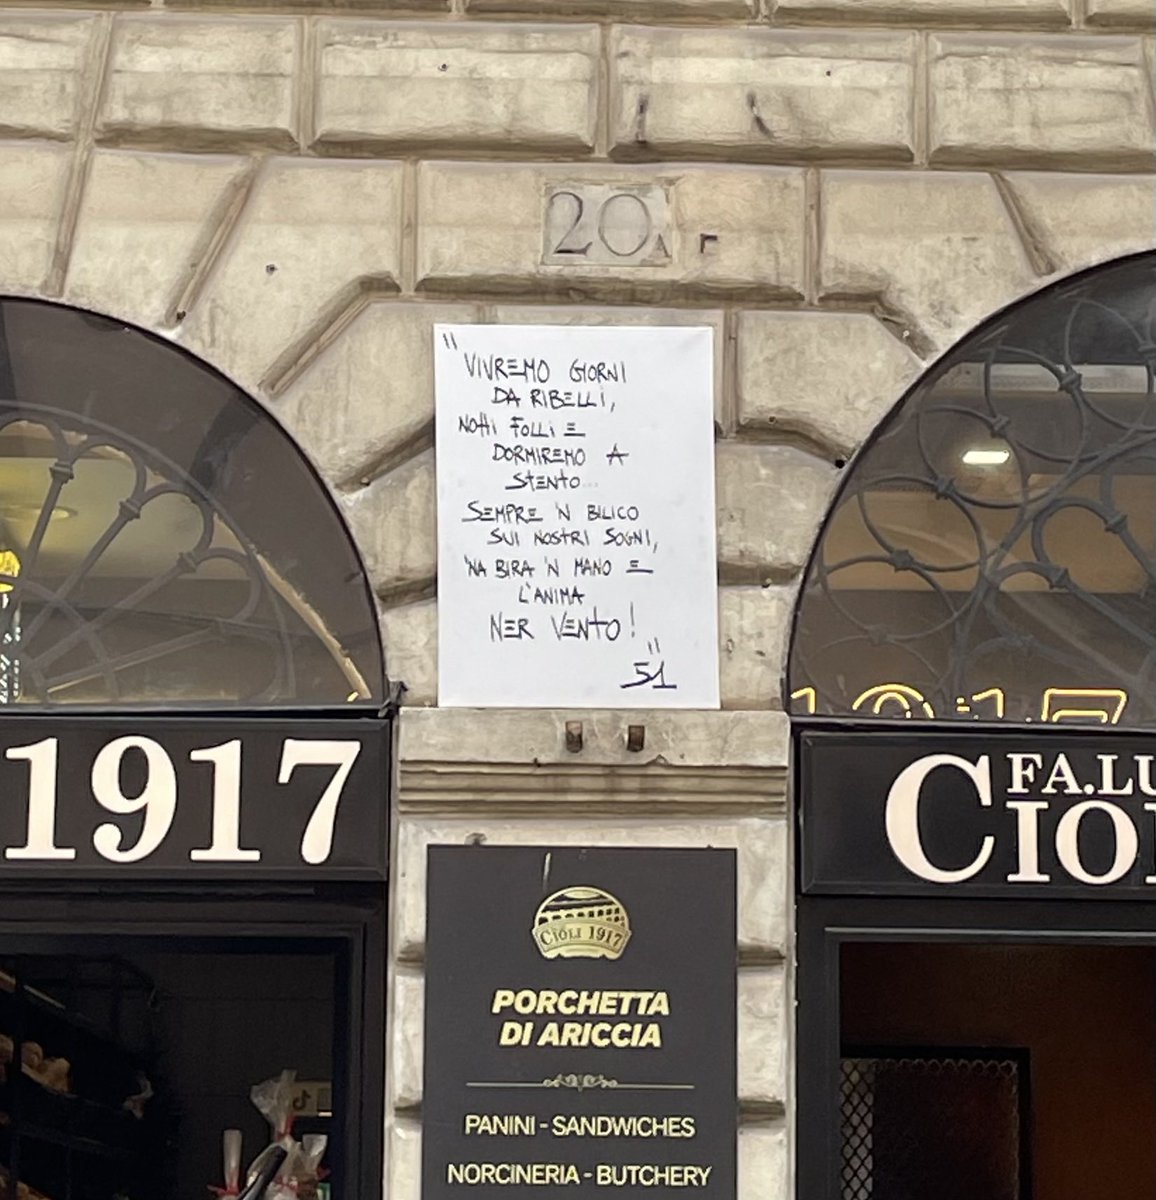 Poesia e porchetta al rione Monti a #Roma , questa è la mia preferita